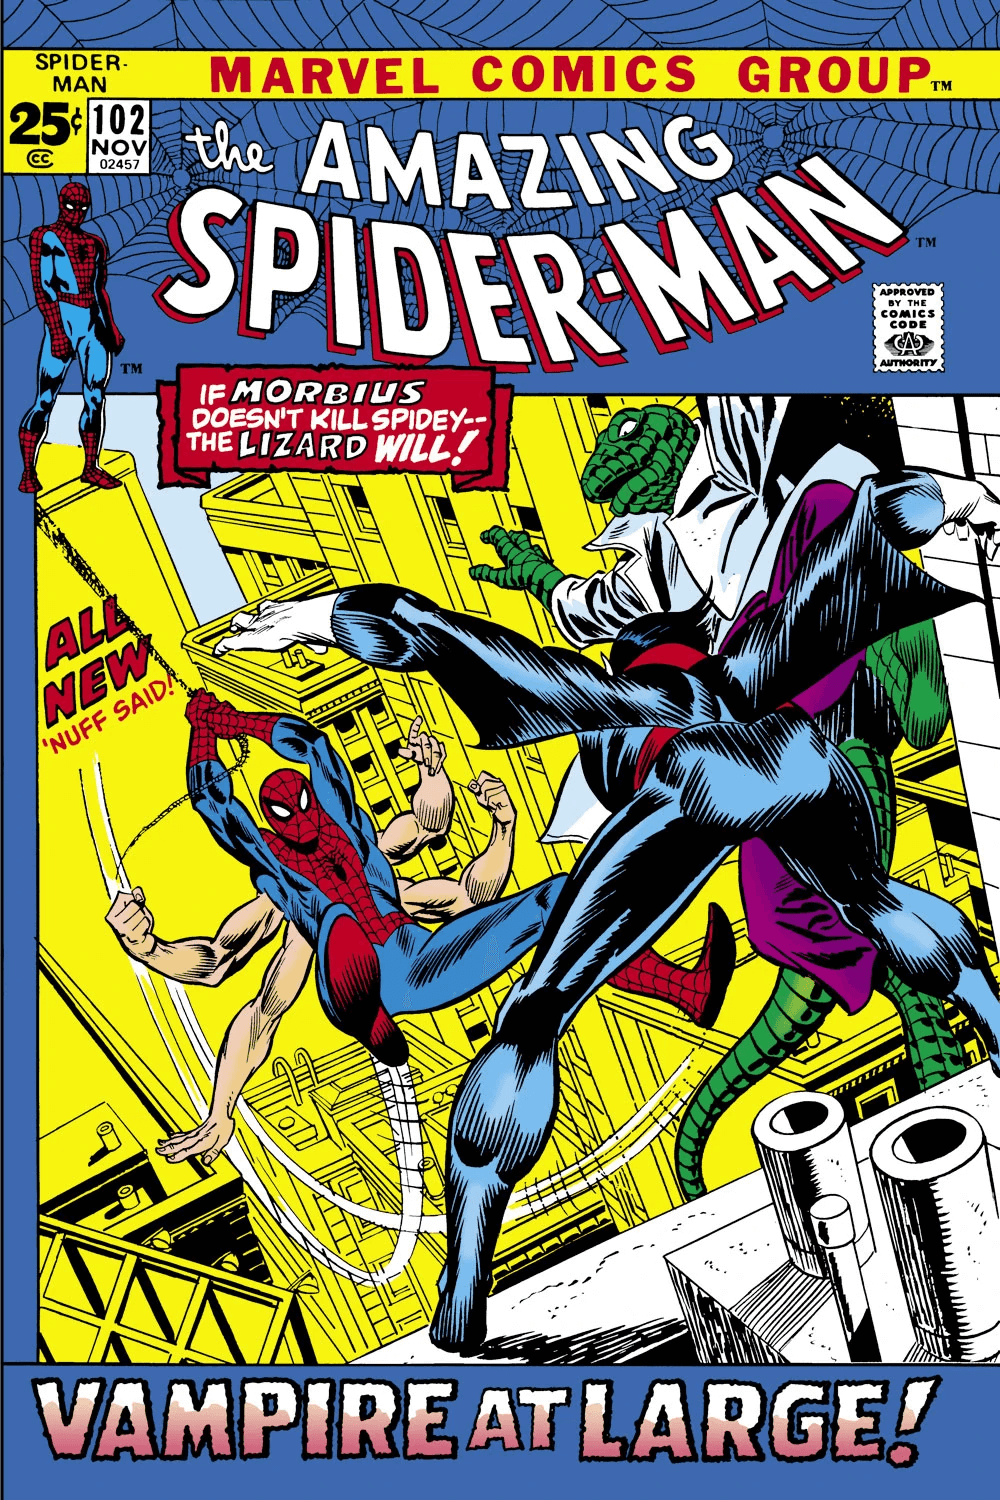 Cover di Amazing Spider-Man 102 di Gil Kane, in cui sono narrate le origini di Morbius